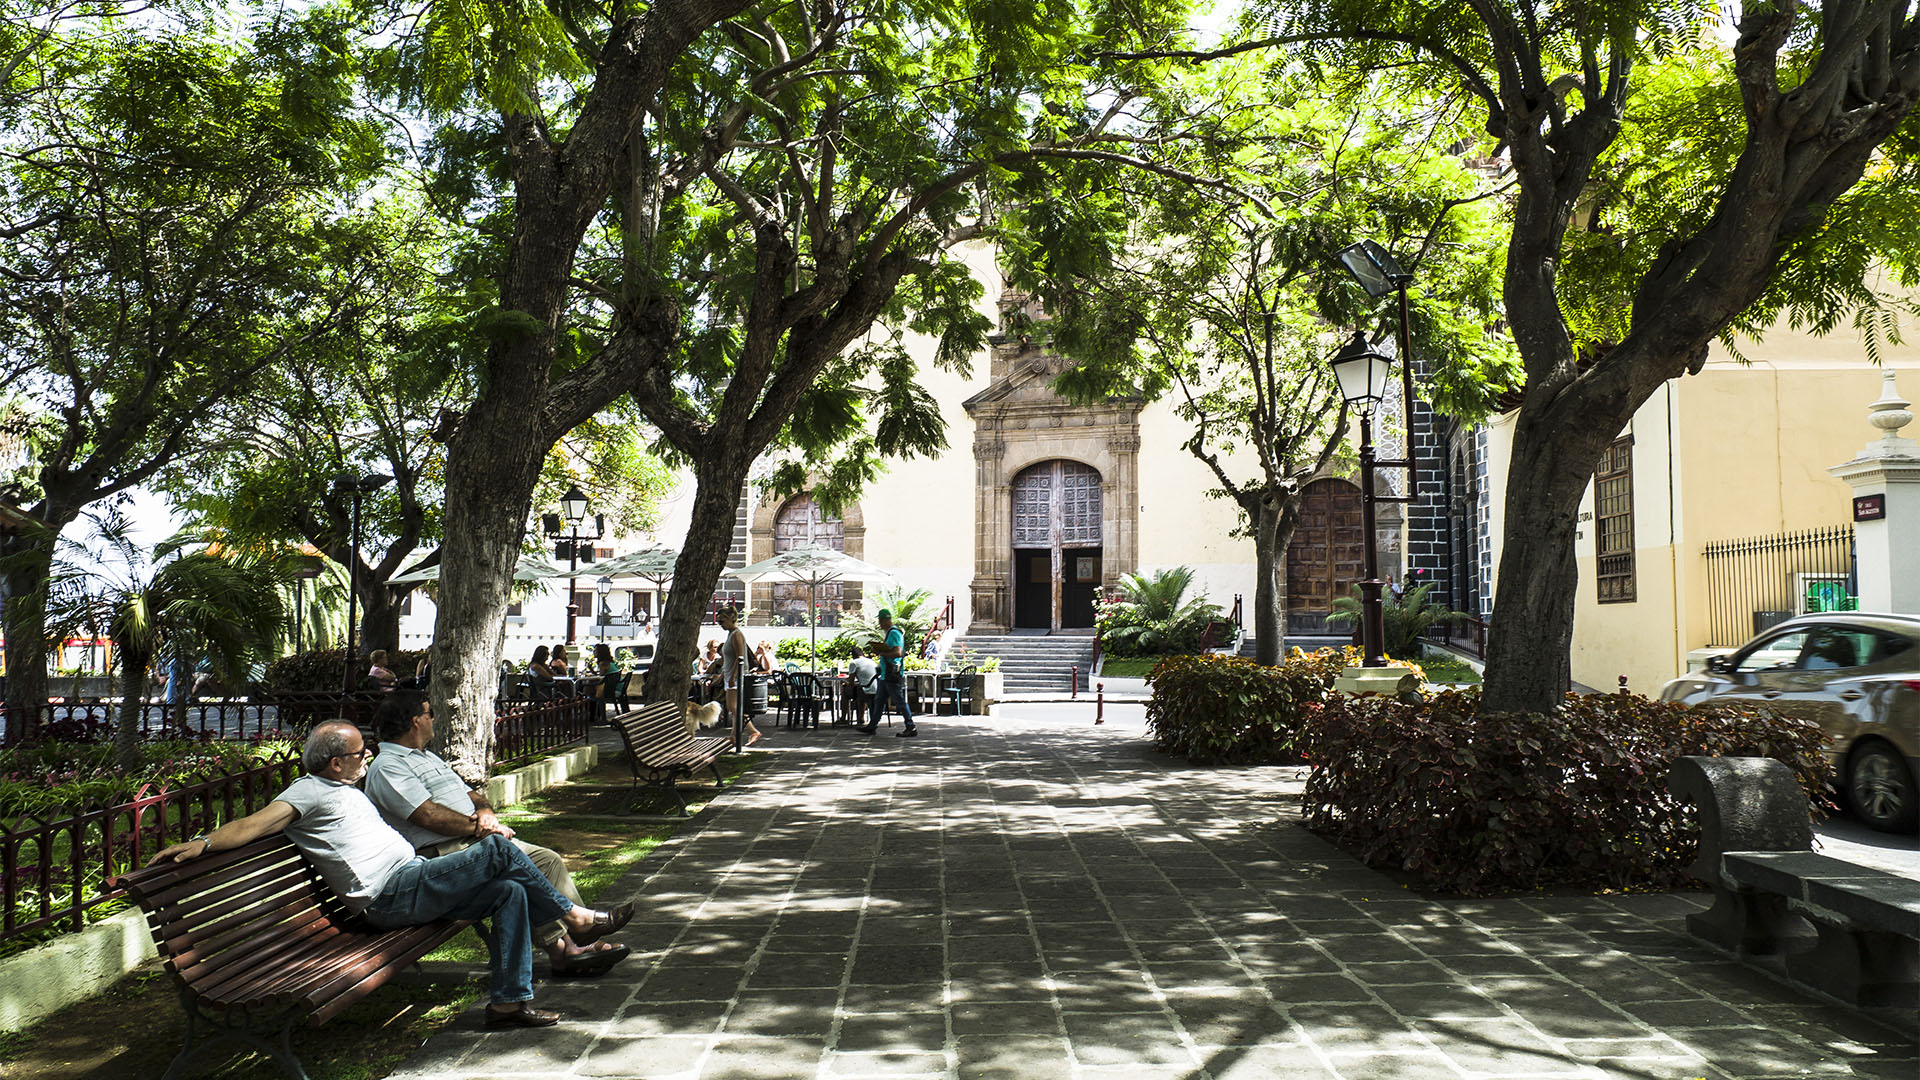 Am schattigen Plaza de la Concepcion flanieren Bürger Oratavas, treffen sich zu einem Plausch oder ein kühles Bier im Kiosk.